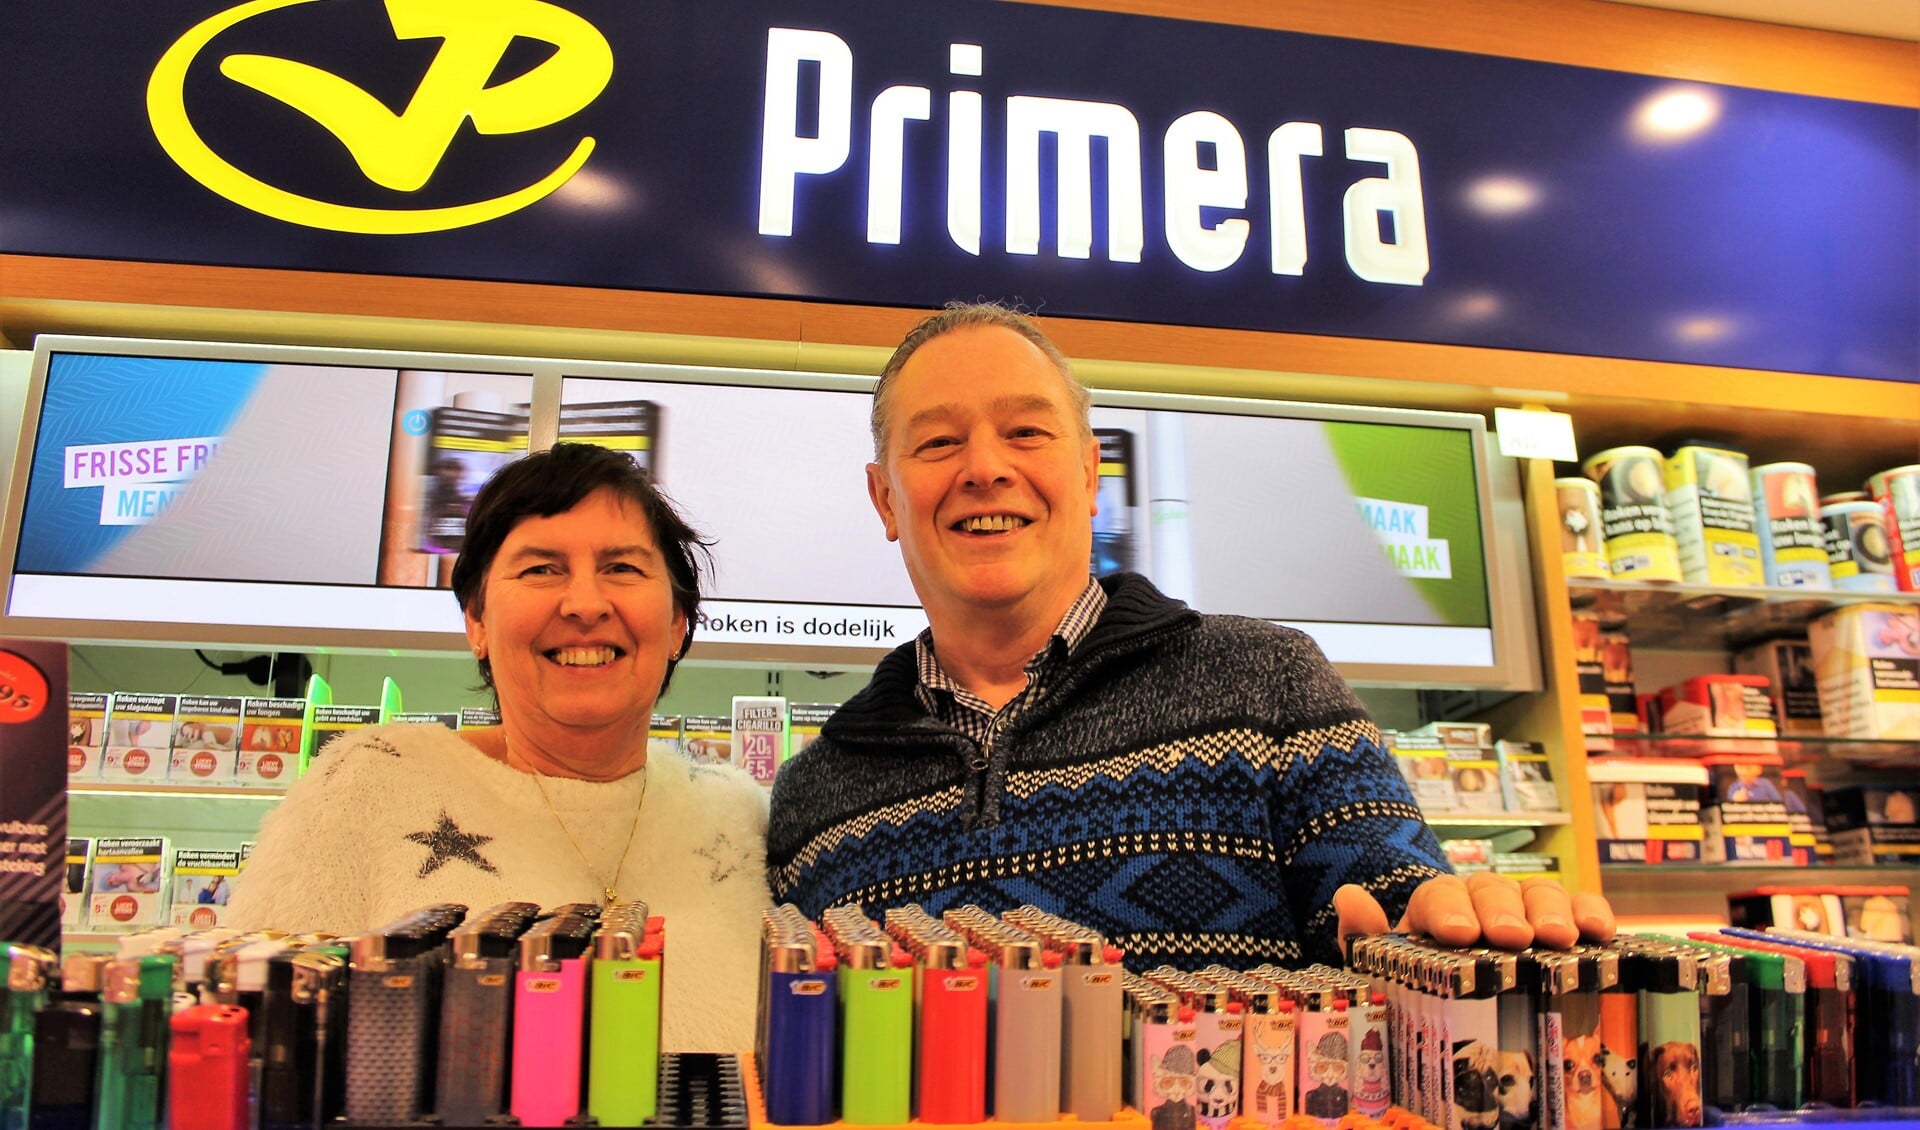 Miranda en Lamber de Koning. Over anderhalve week nemen zij afscheid en verandert de naam van hun winkel van Primera de Koning in Primera Damlaan (foto: DJ).